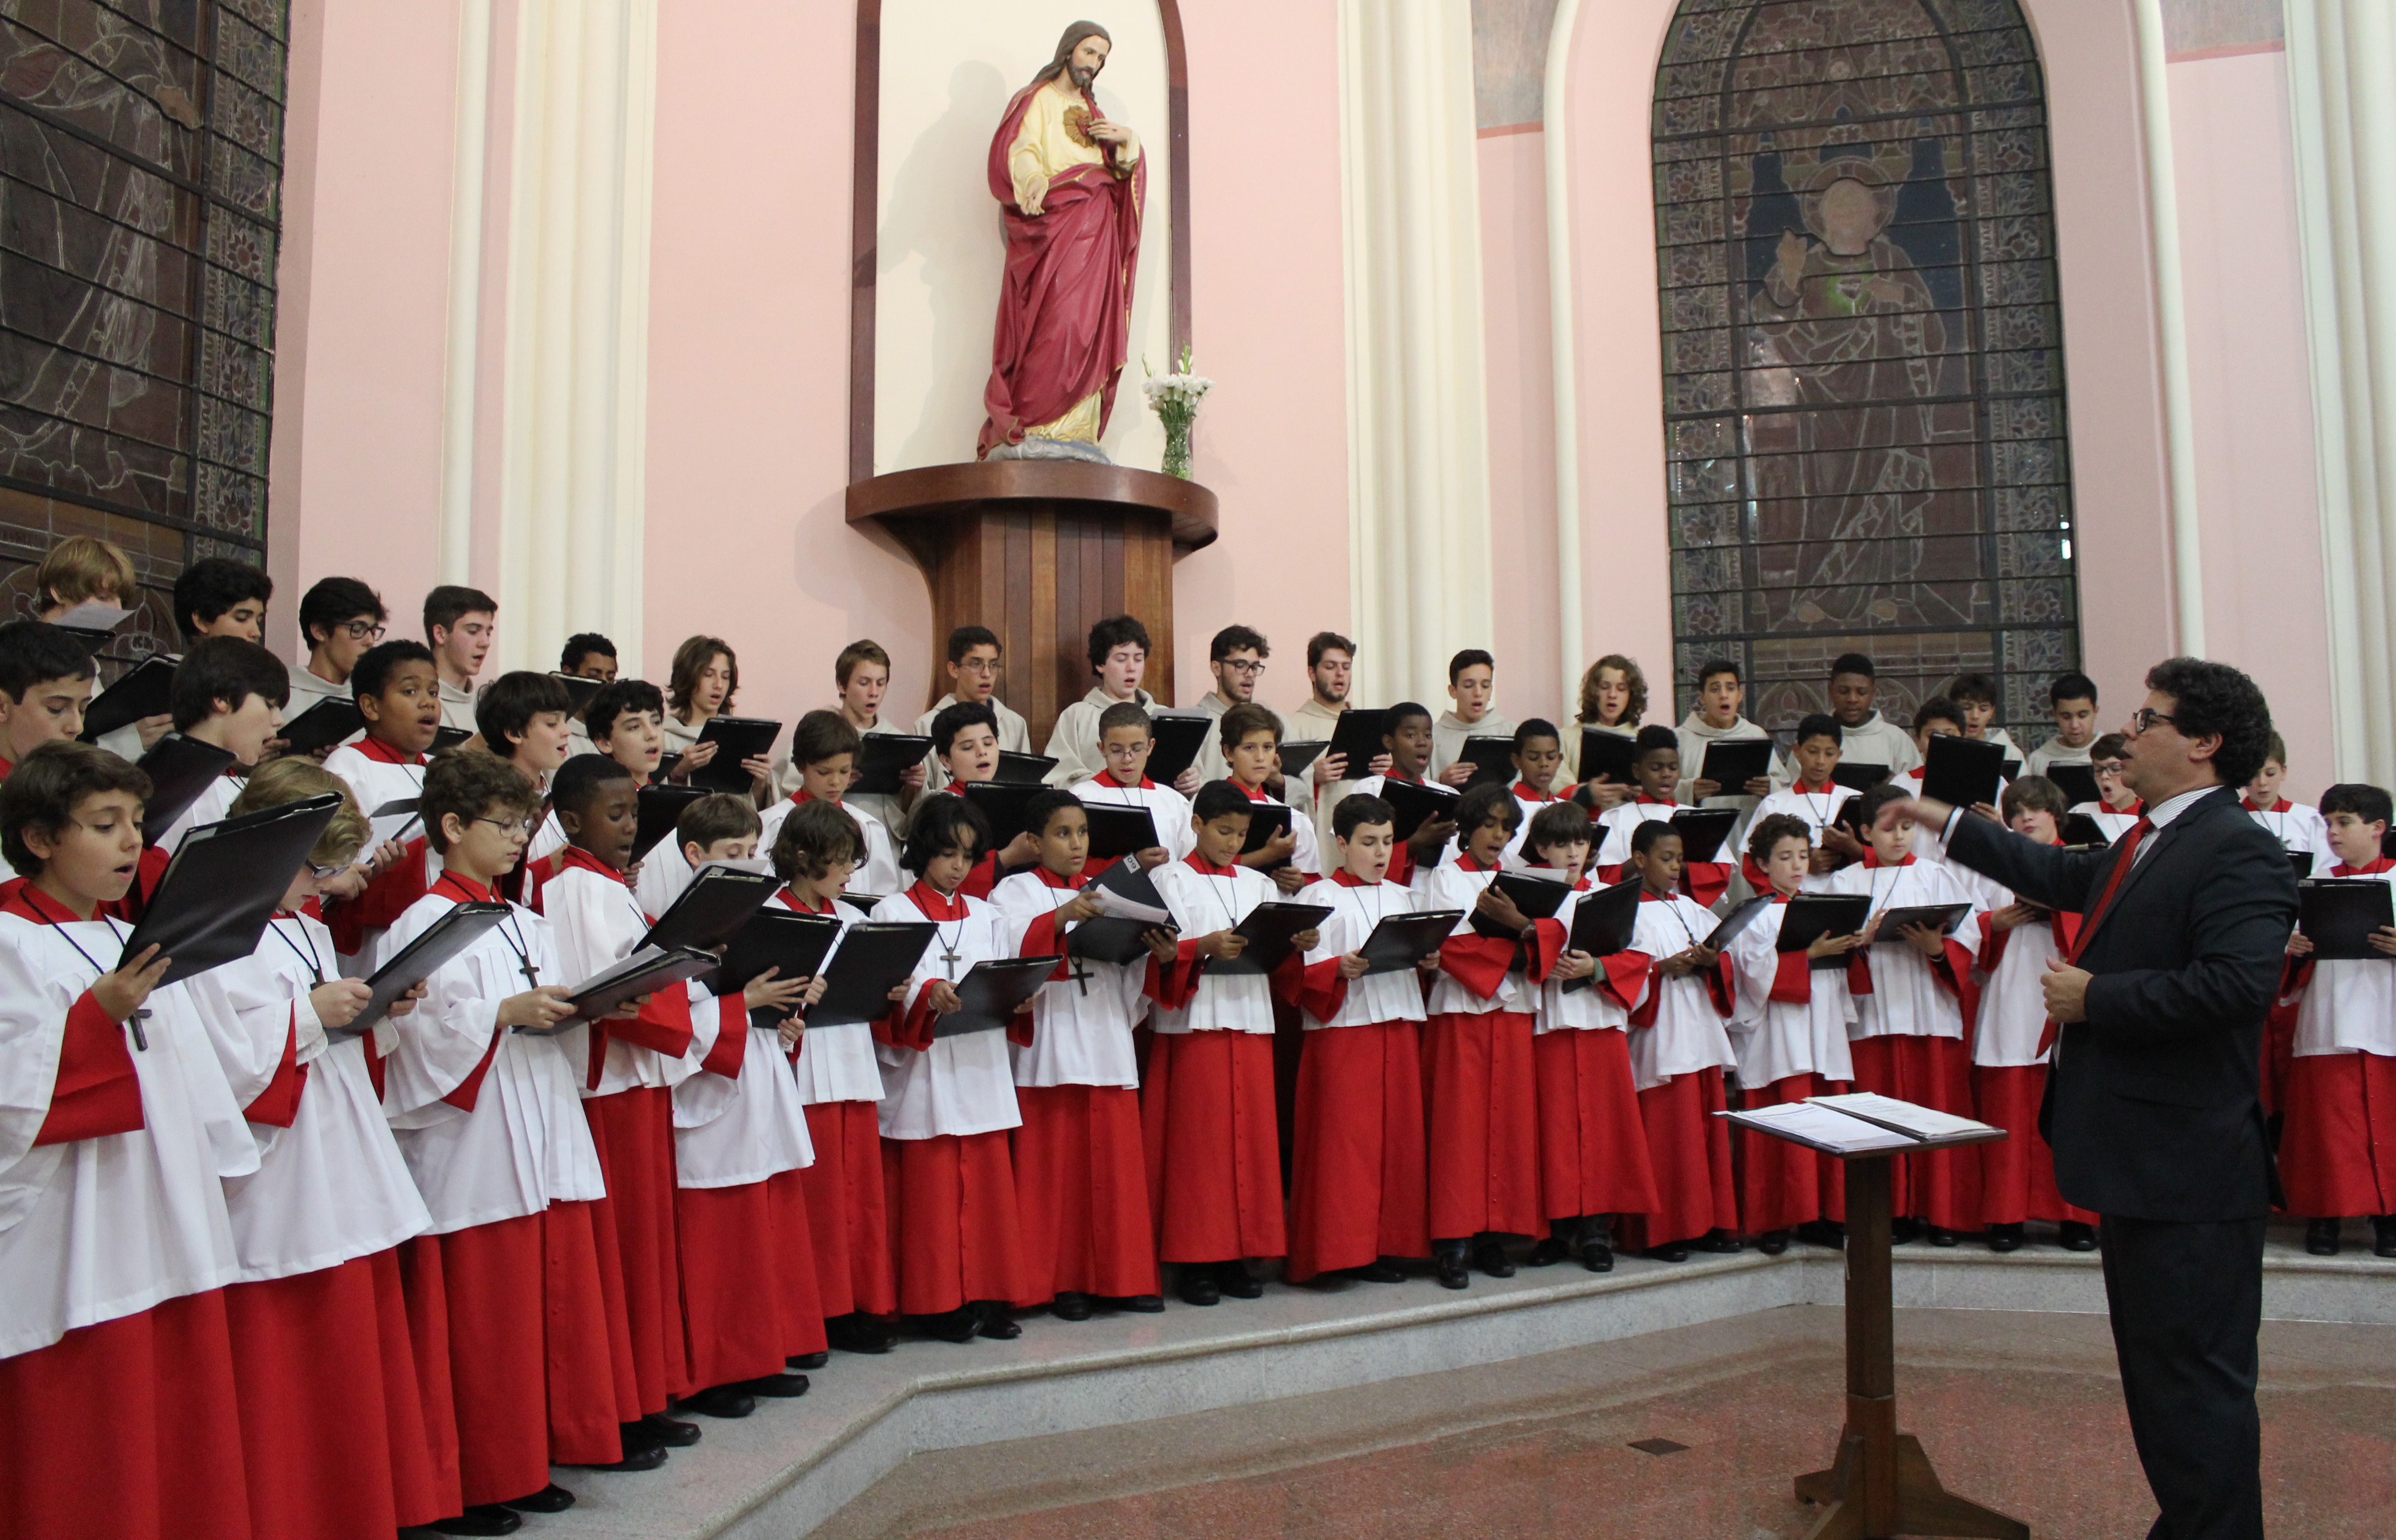 Canarinhos de Petrópolis se apresentam na Catedral São João Batista 